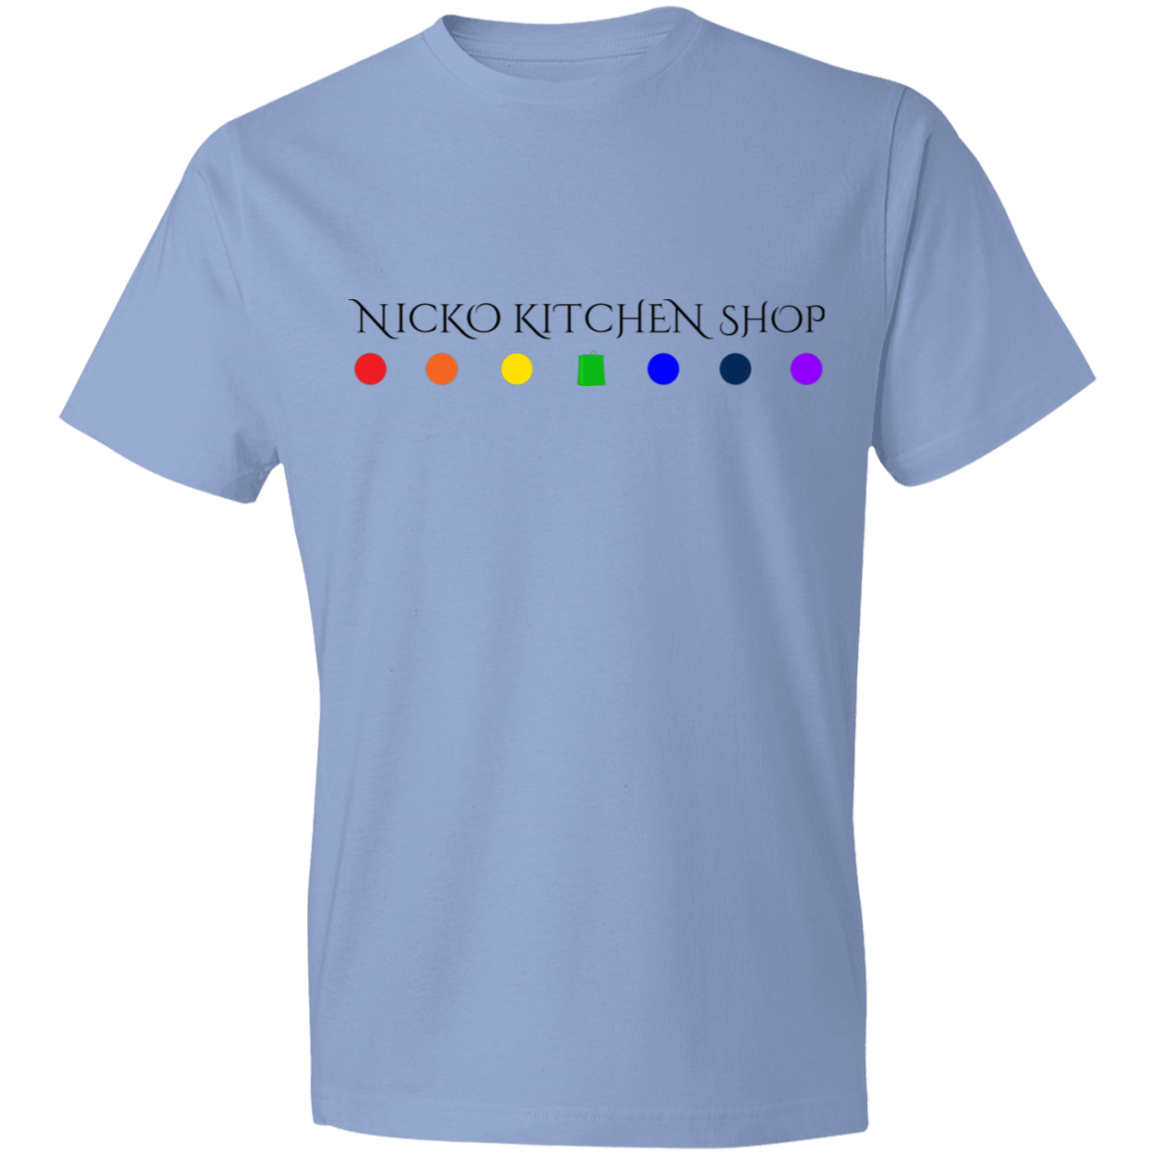 Nicko Kitchen Shop Lightweight T-Shirt 4.5 oz